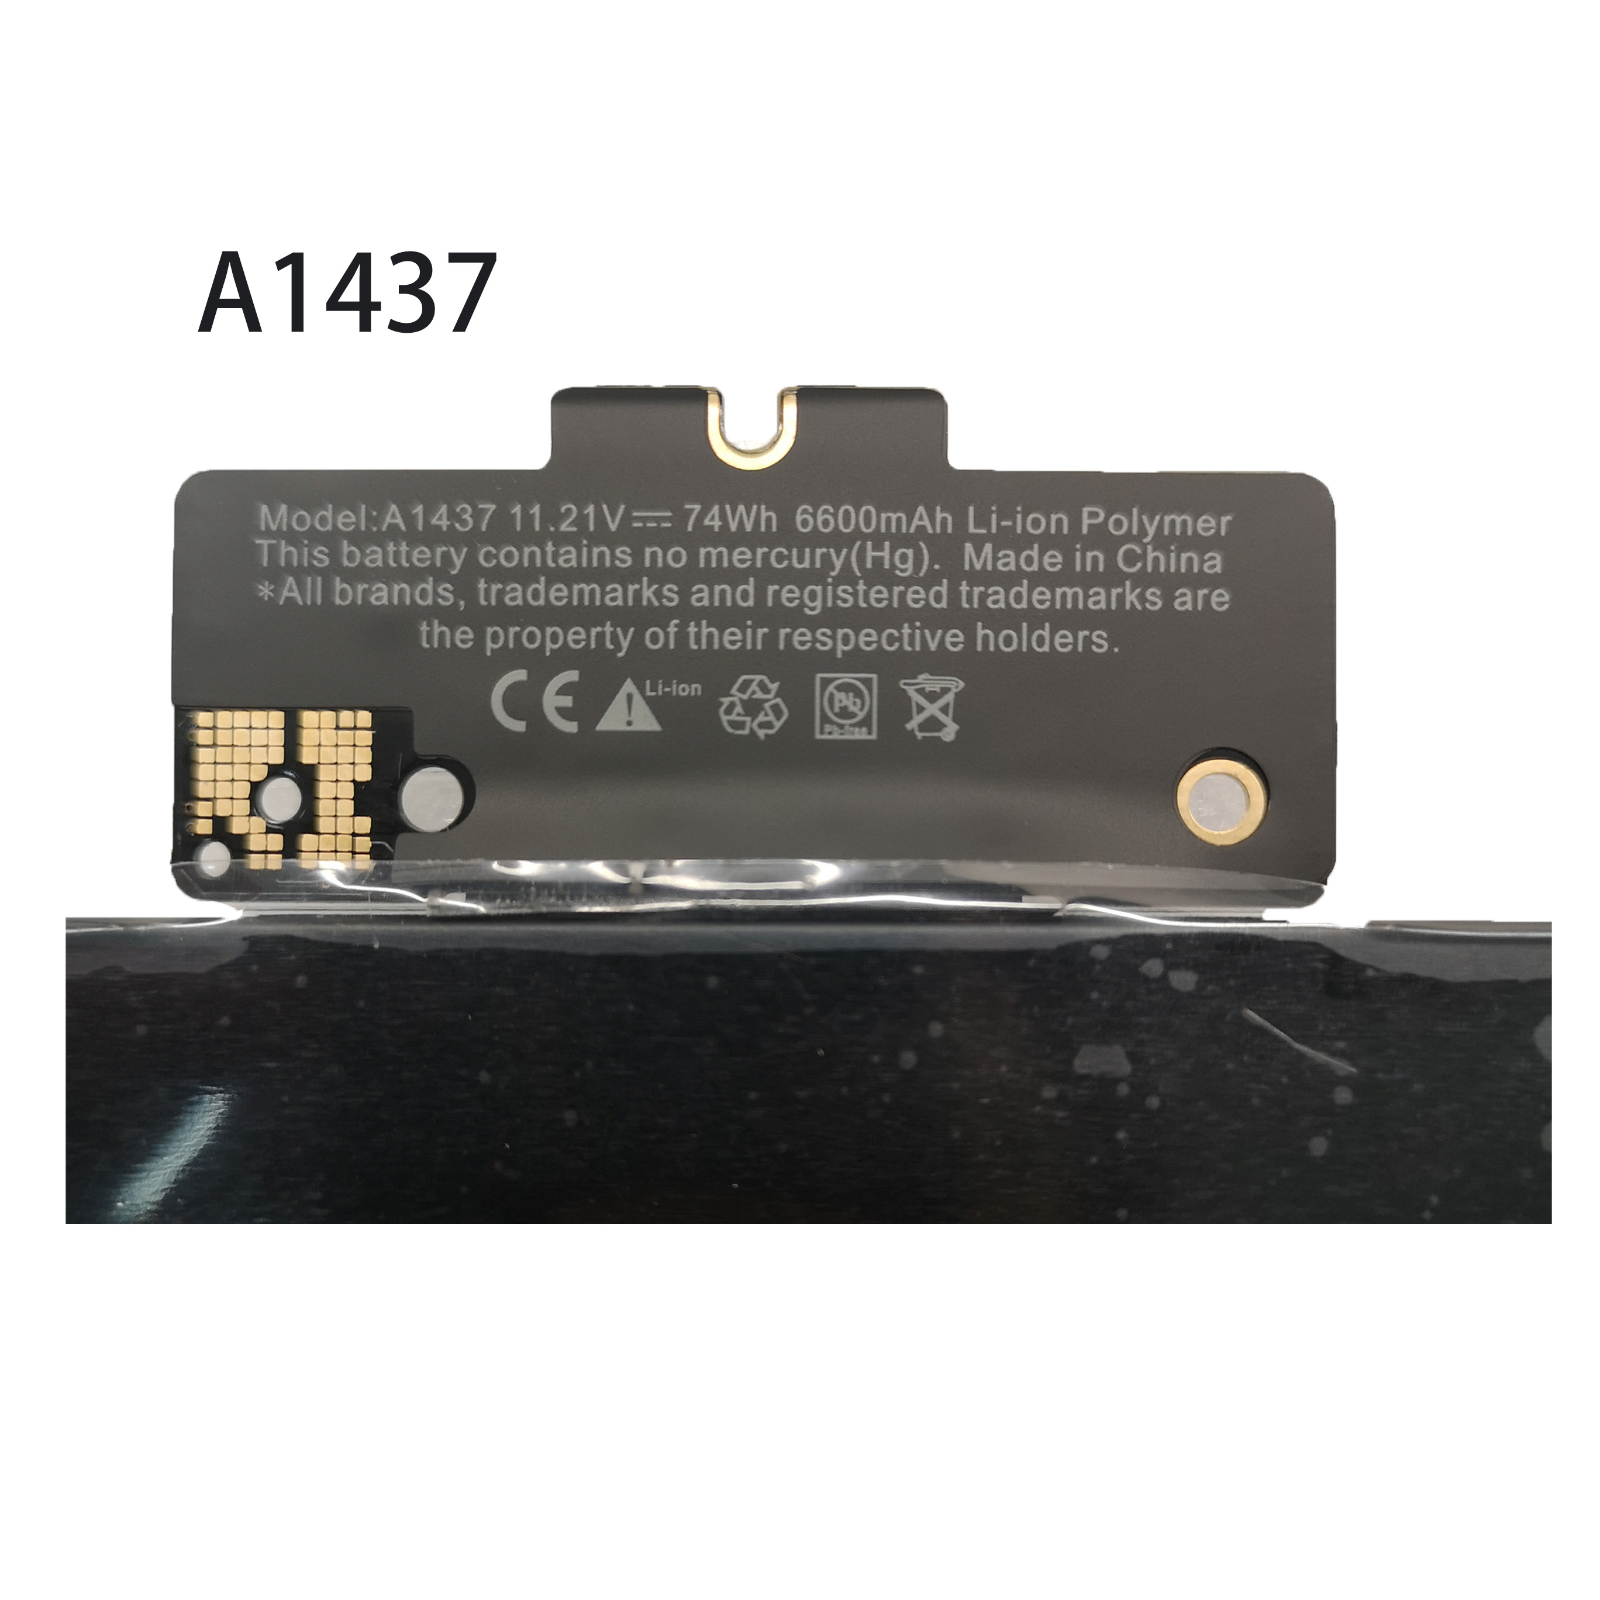 Apple A1425 (Late 2012), A1425 (Late 2012), A1437 kompatibilní baterie